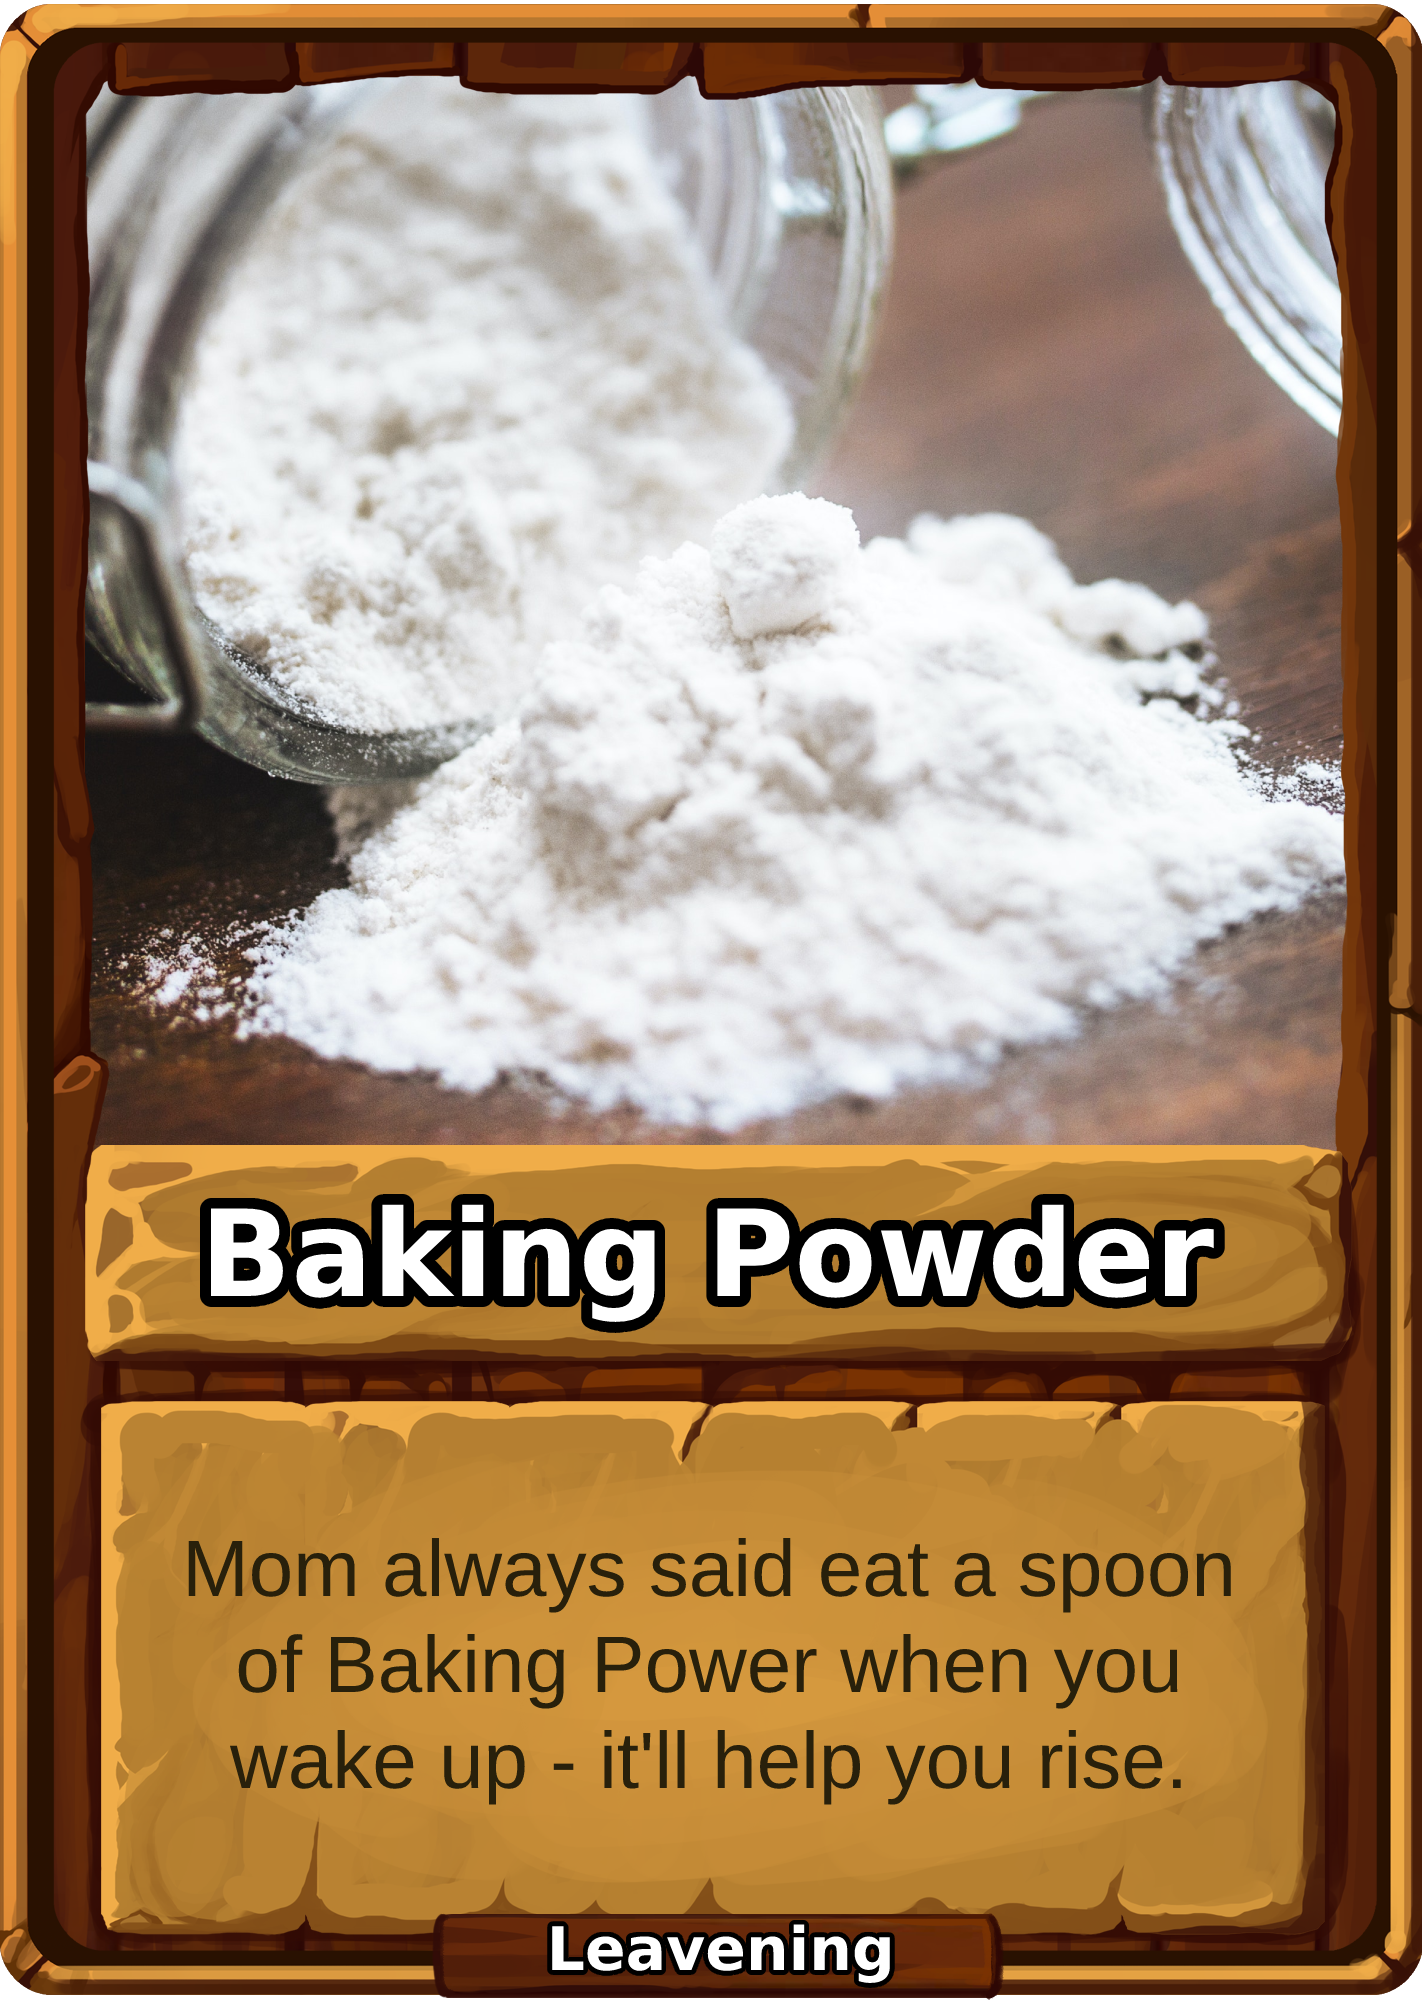 Baking Powder Card Image